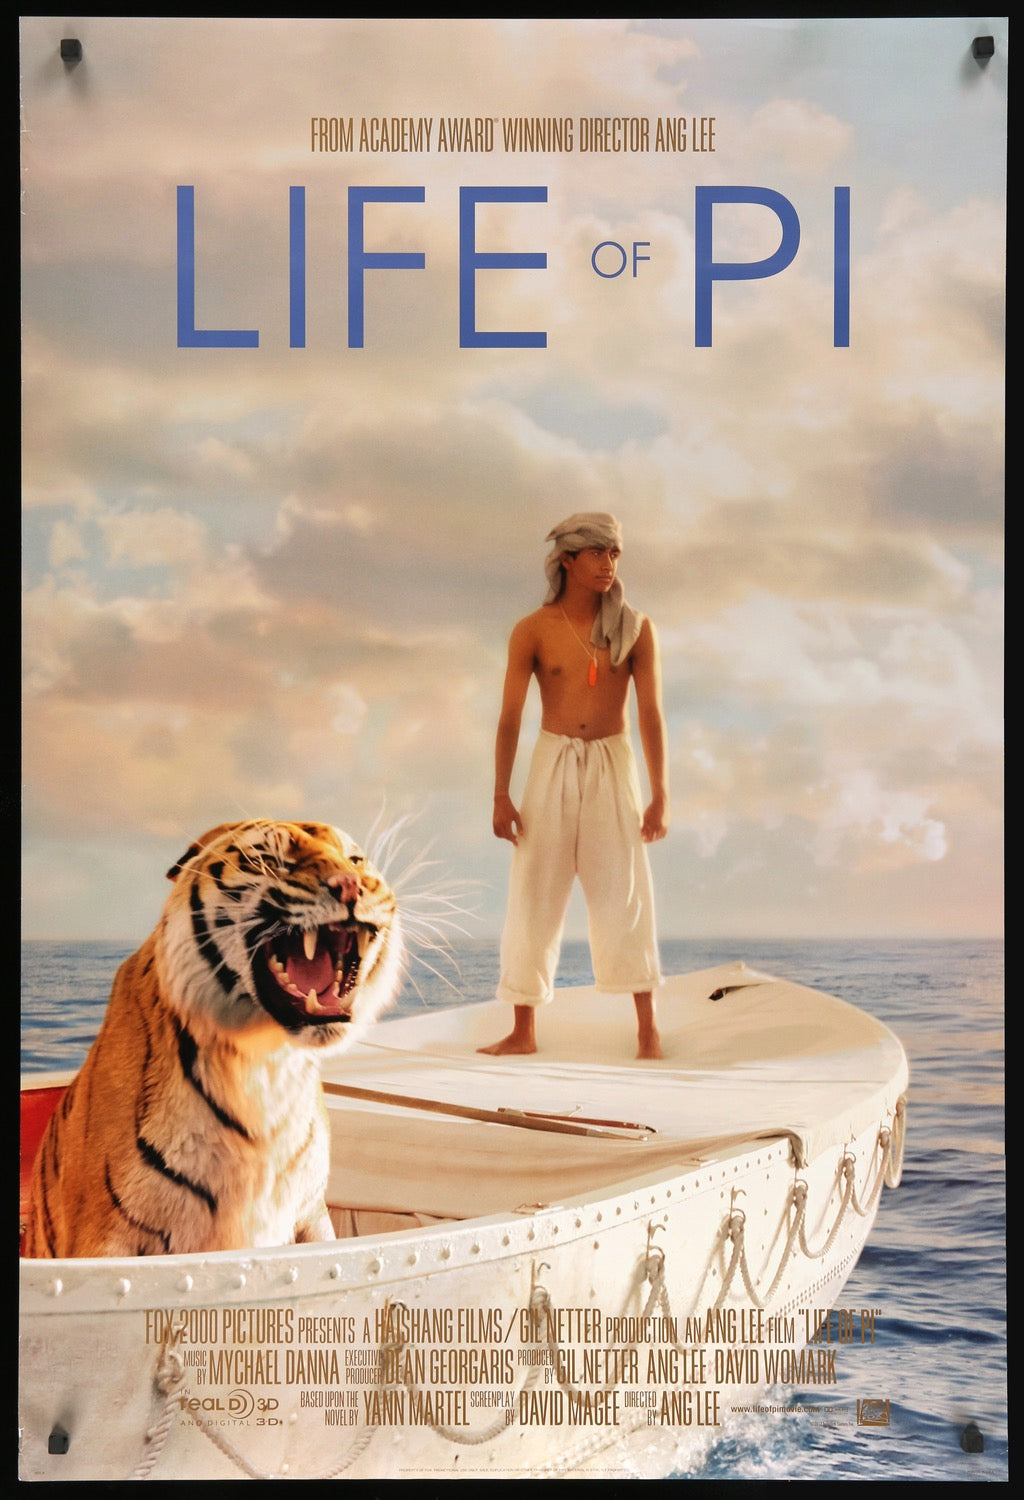 Life of Pi (2012) original movie poster for sale at Original Film Art